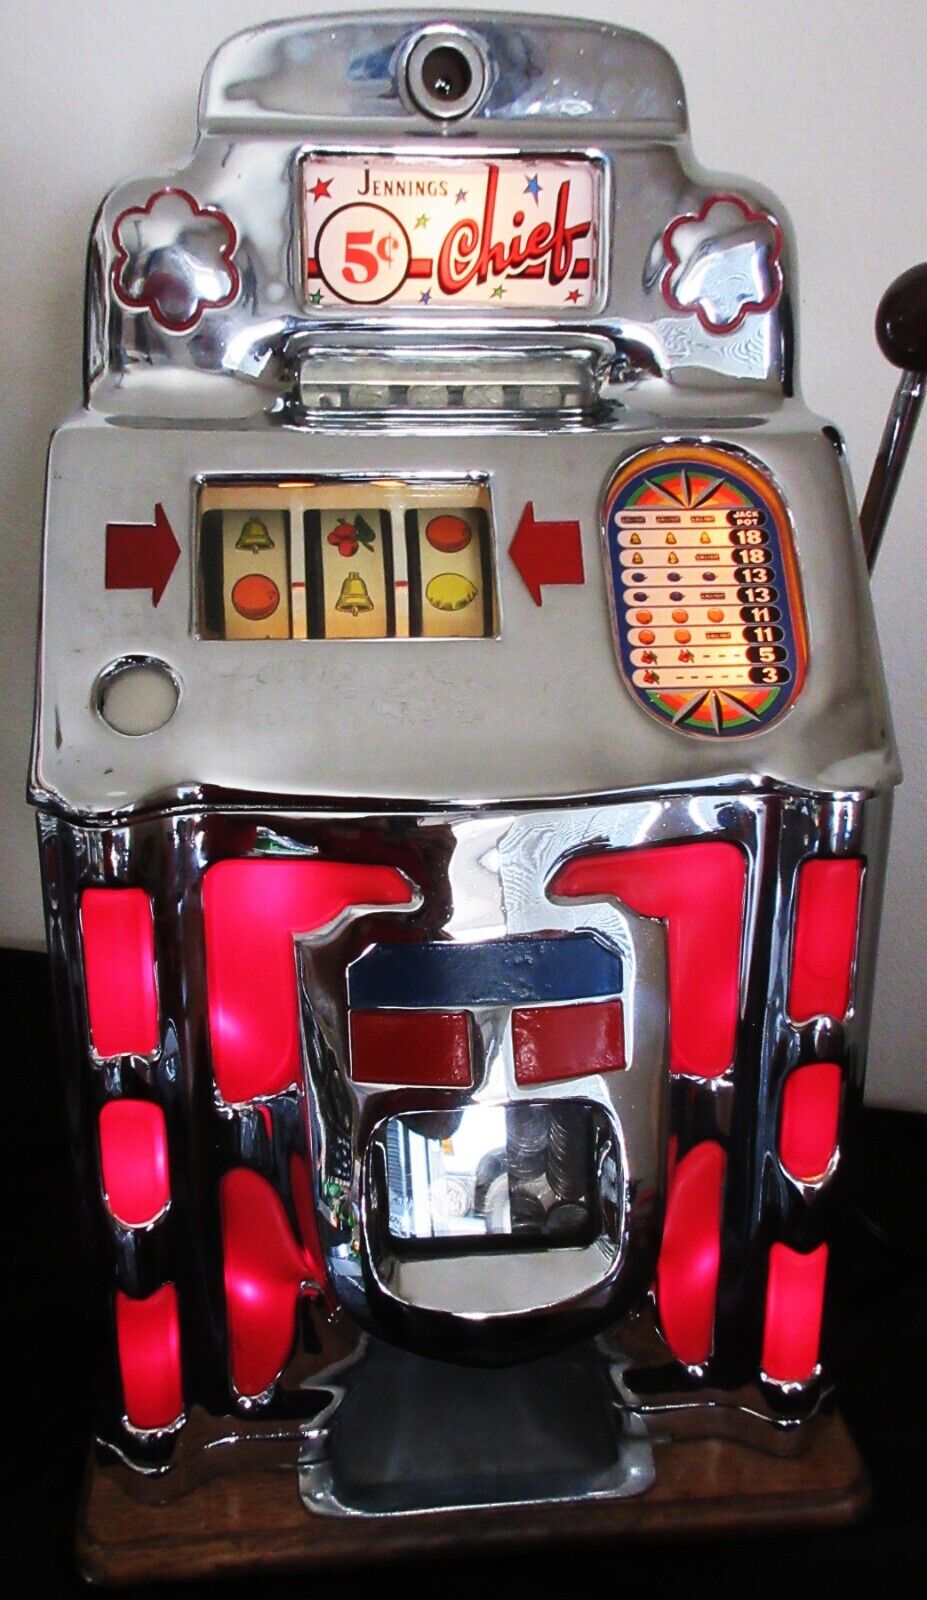 Jennings 5c Club Chief Red Lite Up Slot Machine circa 1930's